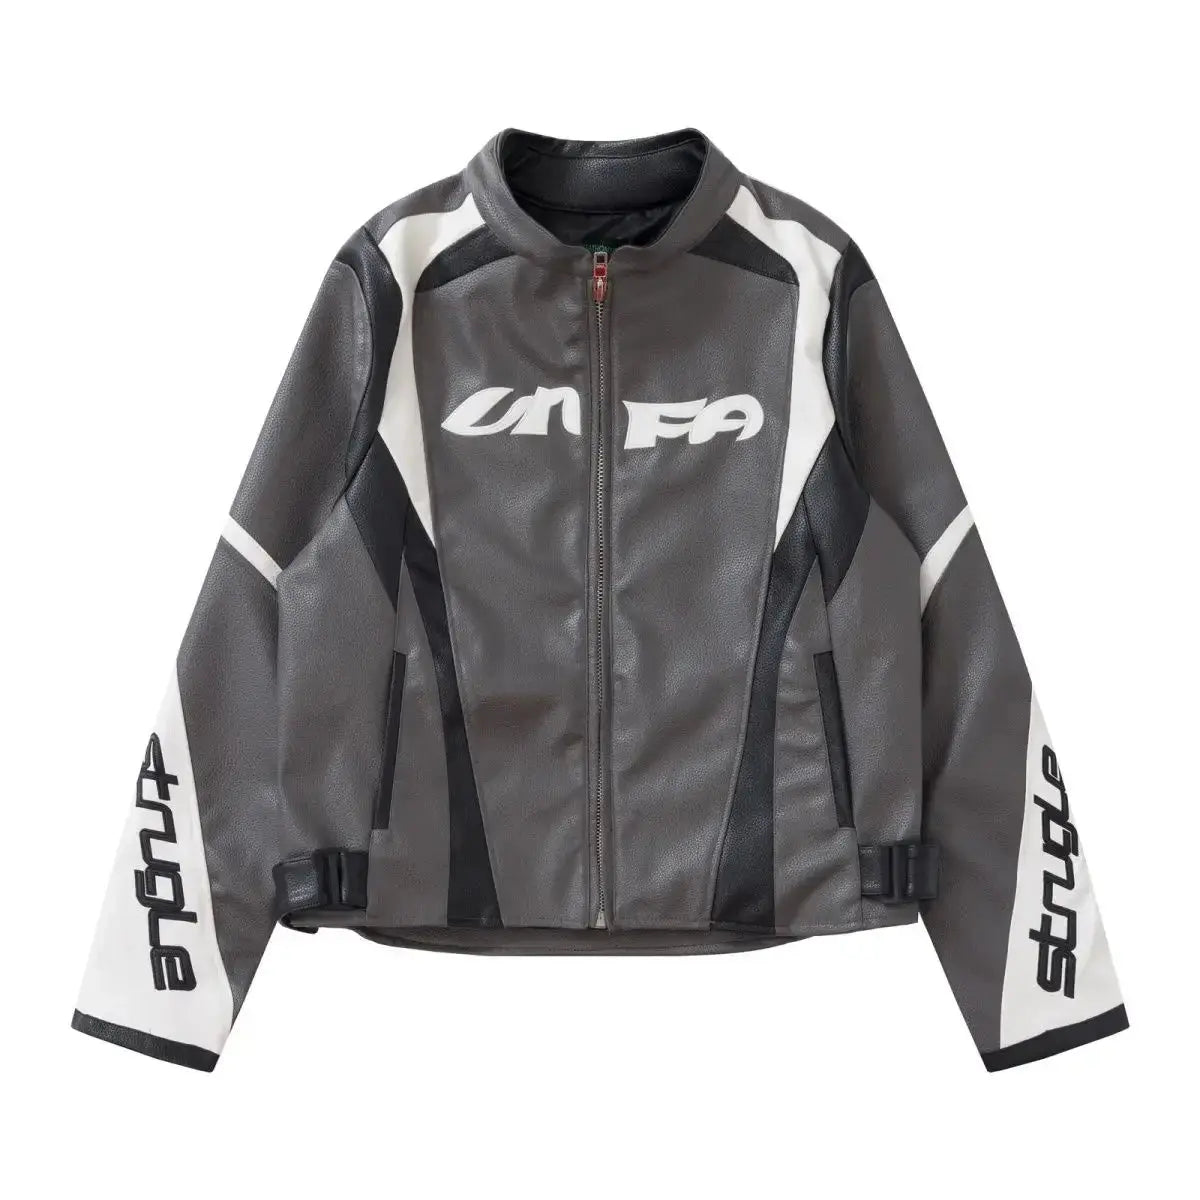 Racing Motorcycle Leather Jacket